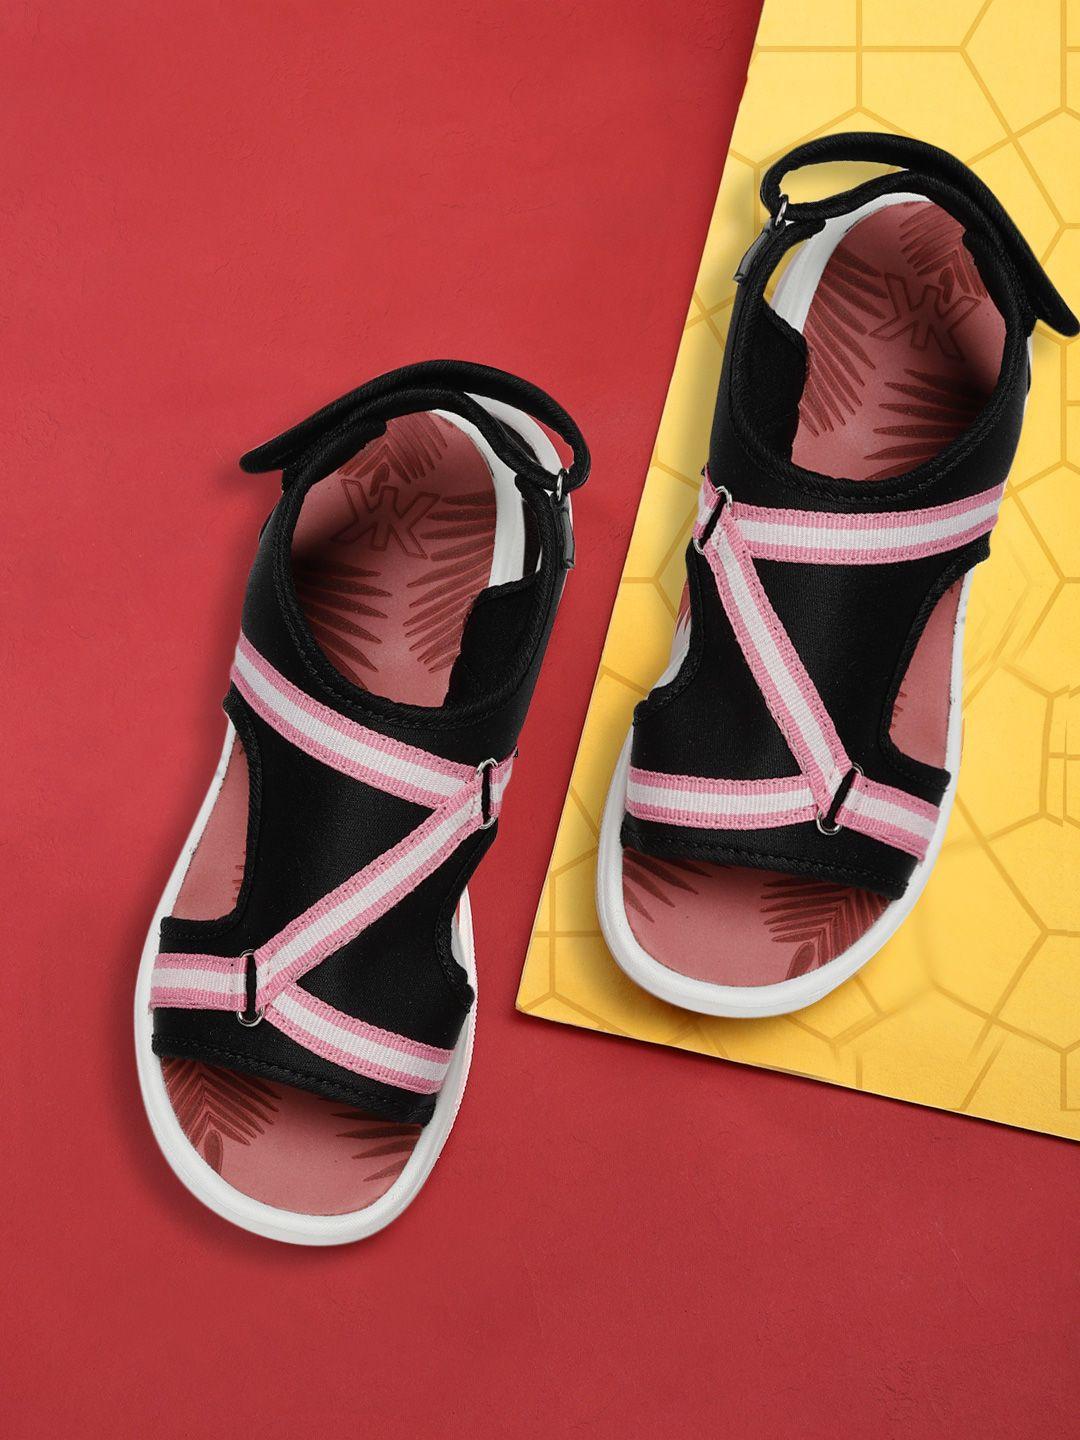 kook n keech women black & pink striped sports sandals